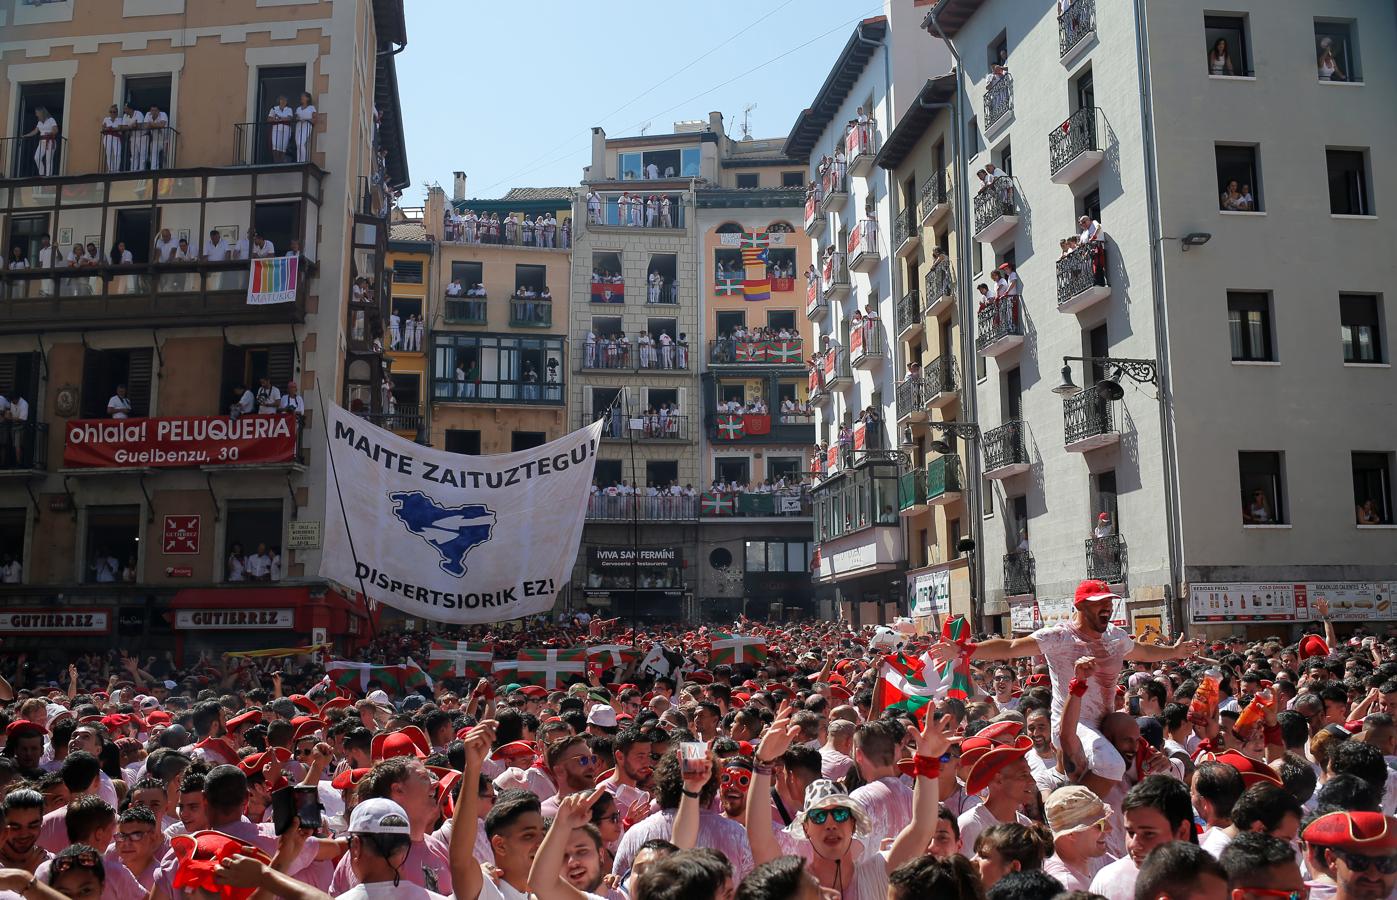 Pese a la prohibición del Consistorio, se ha introducido una pancarta a favor de los presos de ETA. Además, han metido una ikurriña gigante y una bandera de Navarra.